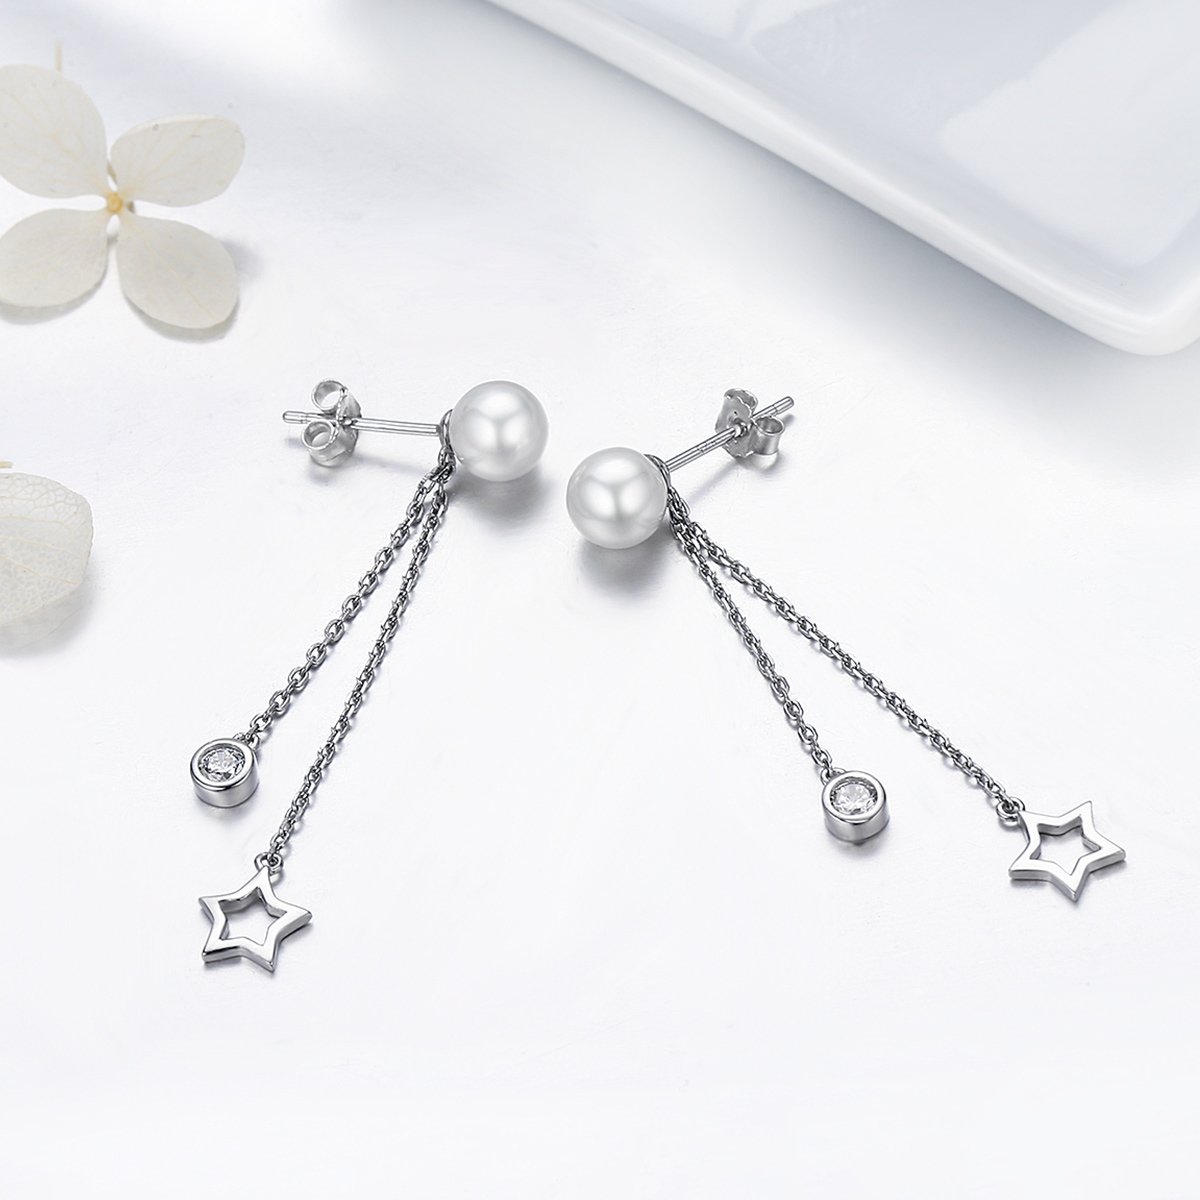 Luxury Twinkle Star 925 Sterling Silver Earrings - Aisllin Jewelry